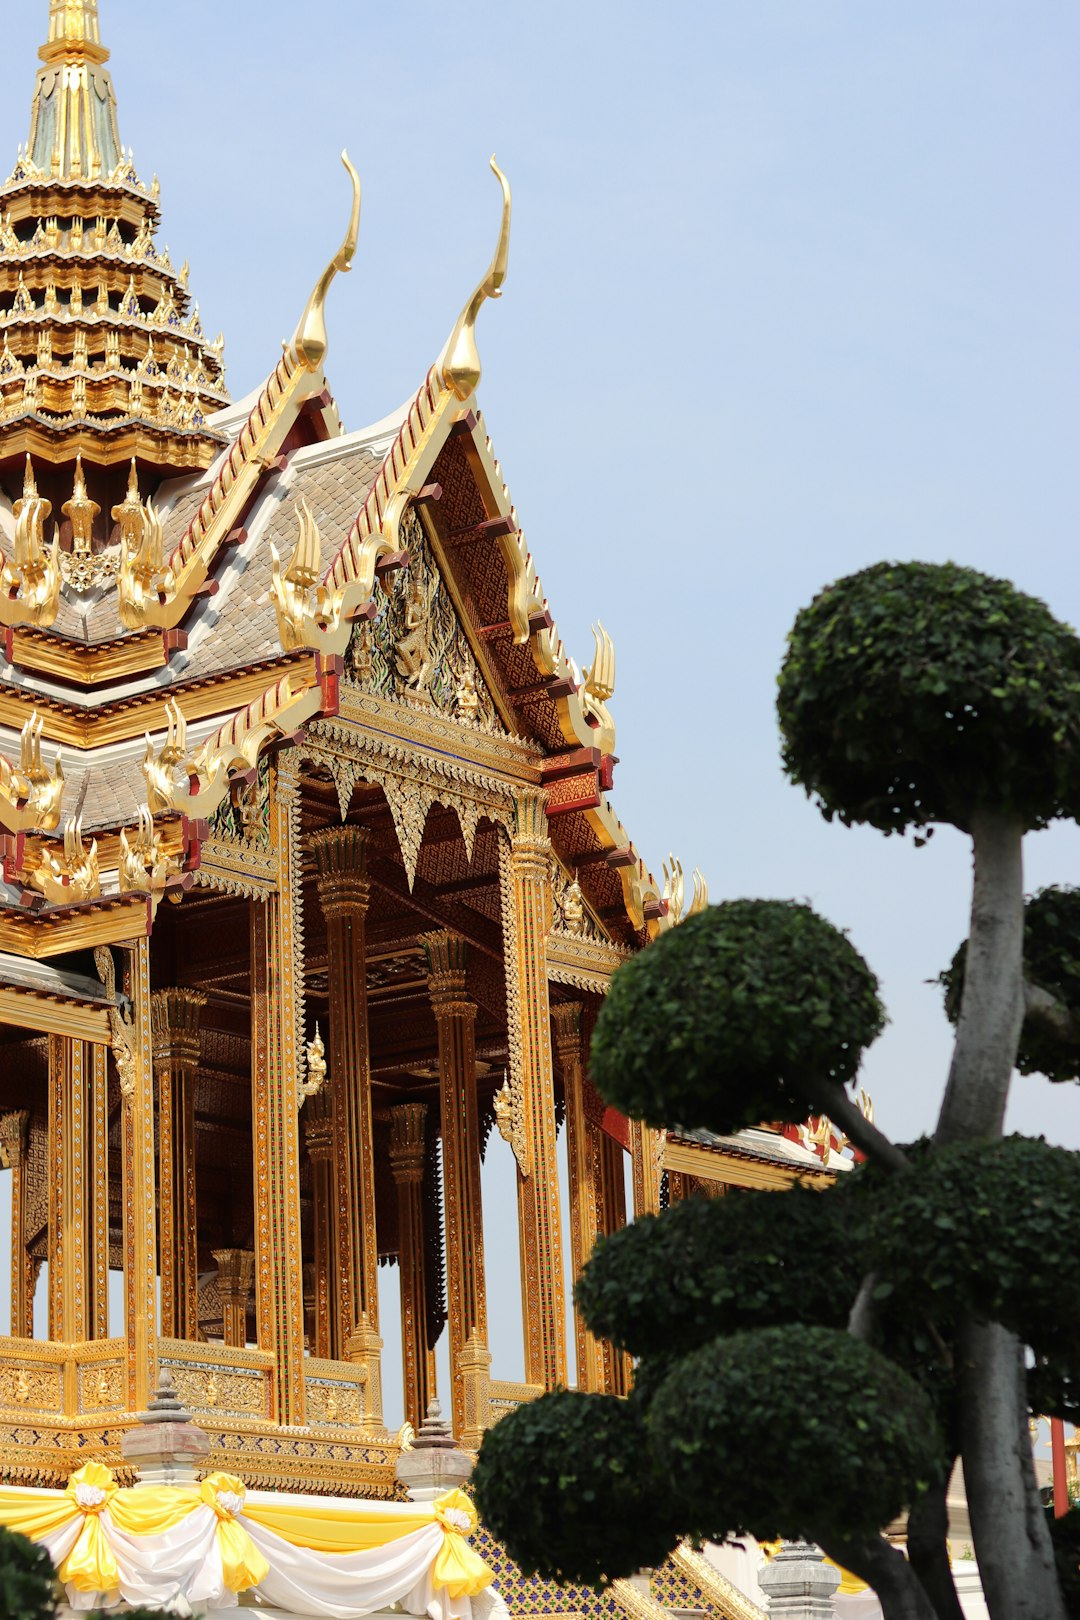 Place of worship photo spot Bangkok Wat Arun Ratchawararam Ratchawaramahawihan